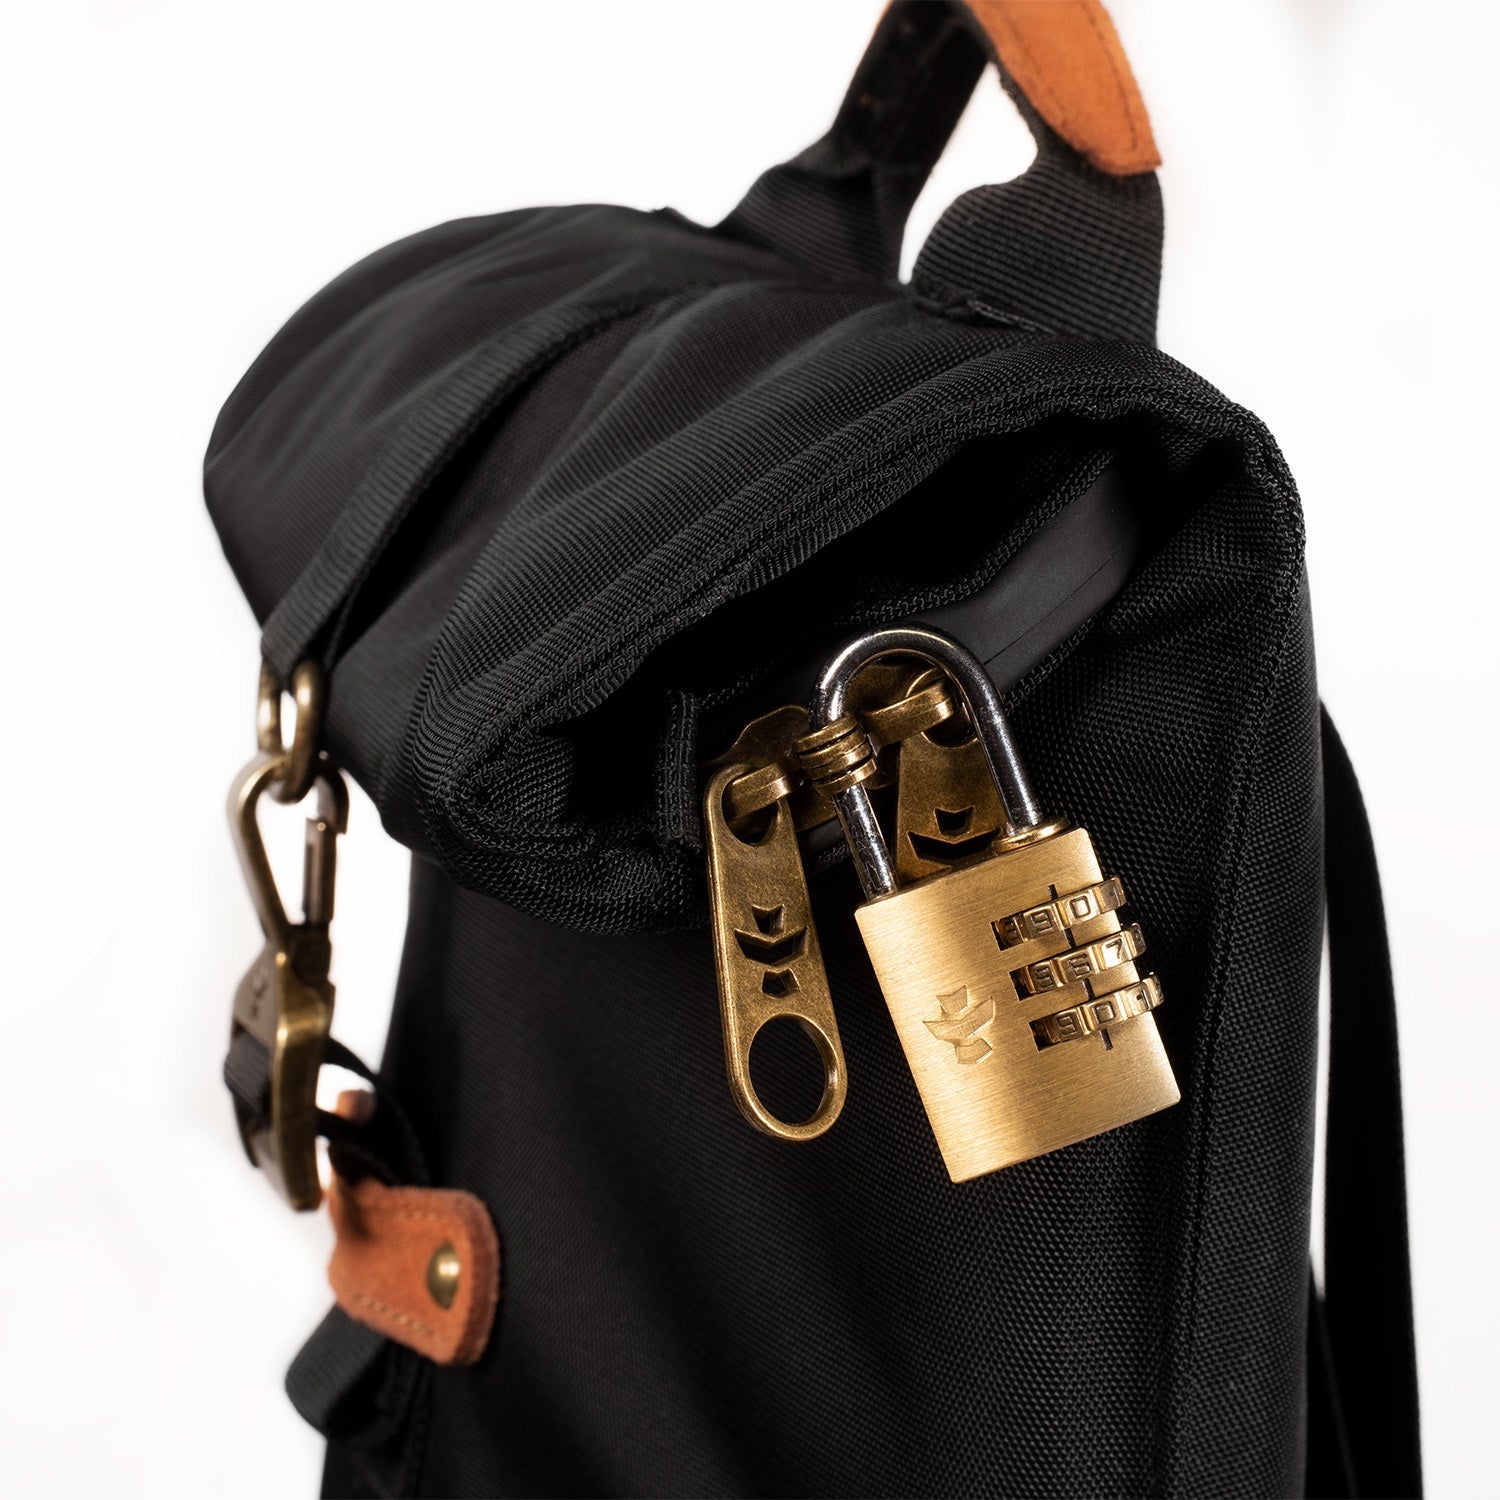 Revelry Defender - Smell Proof Padded Backpack